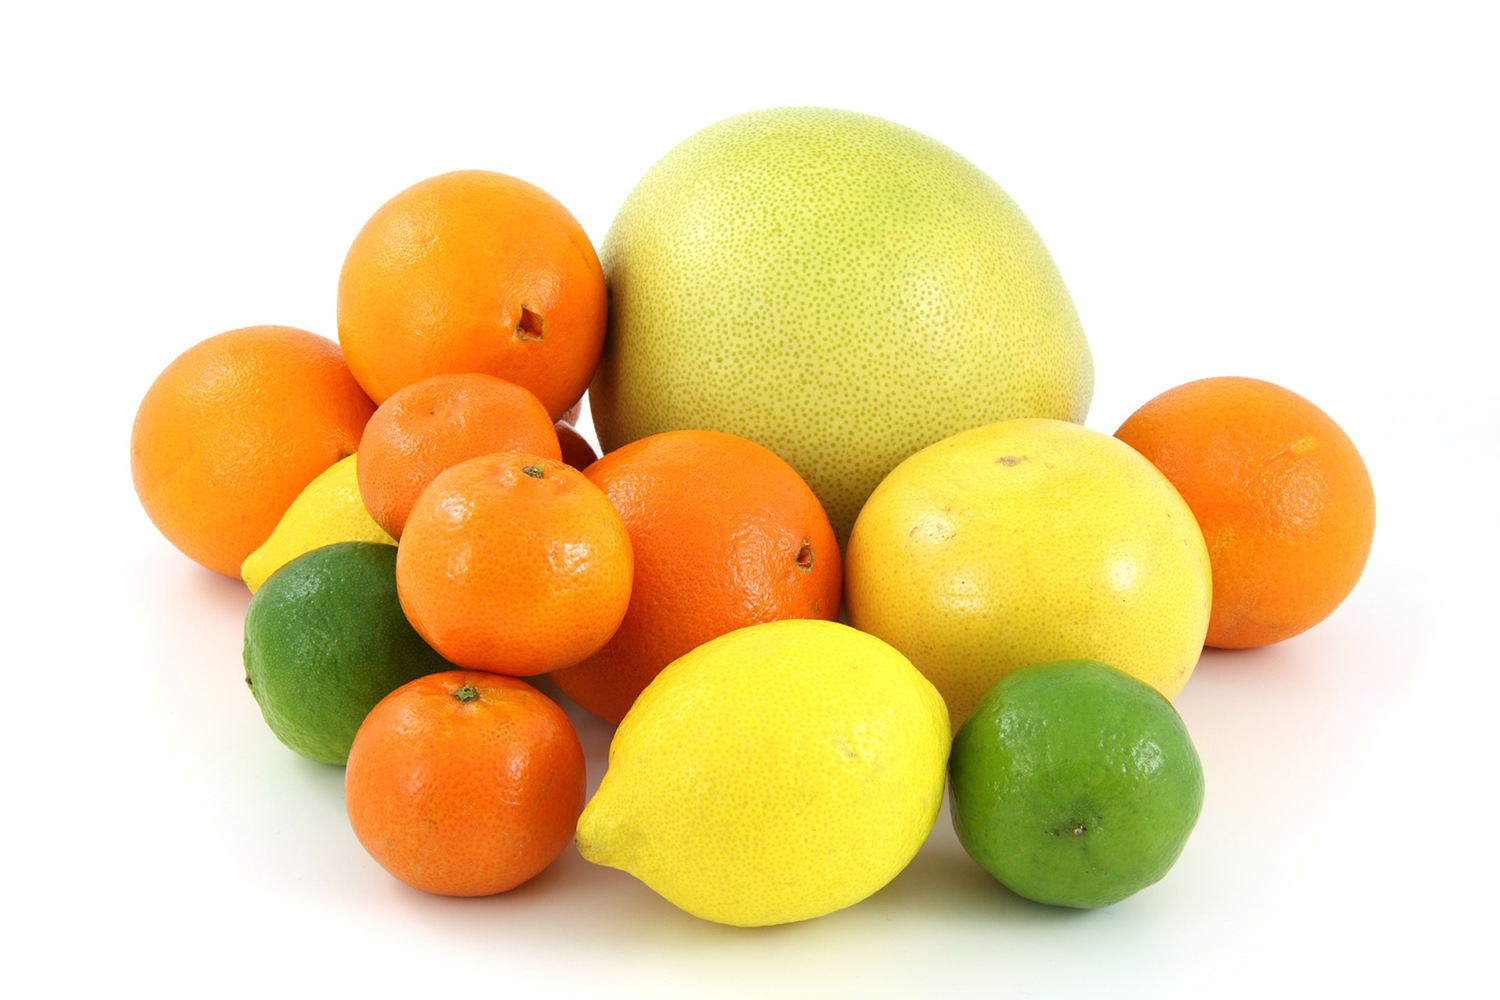 Fruits Isolated On White Background Grapefruit Orange Lemon And